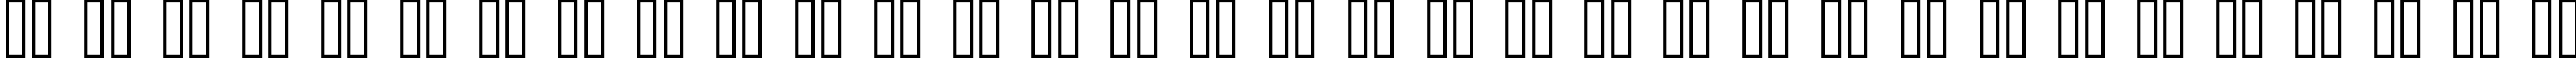 Пример написания русского алфавита шрифтом standard 07_56